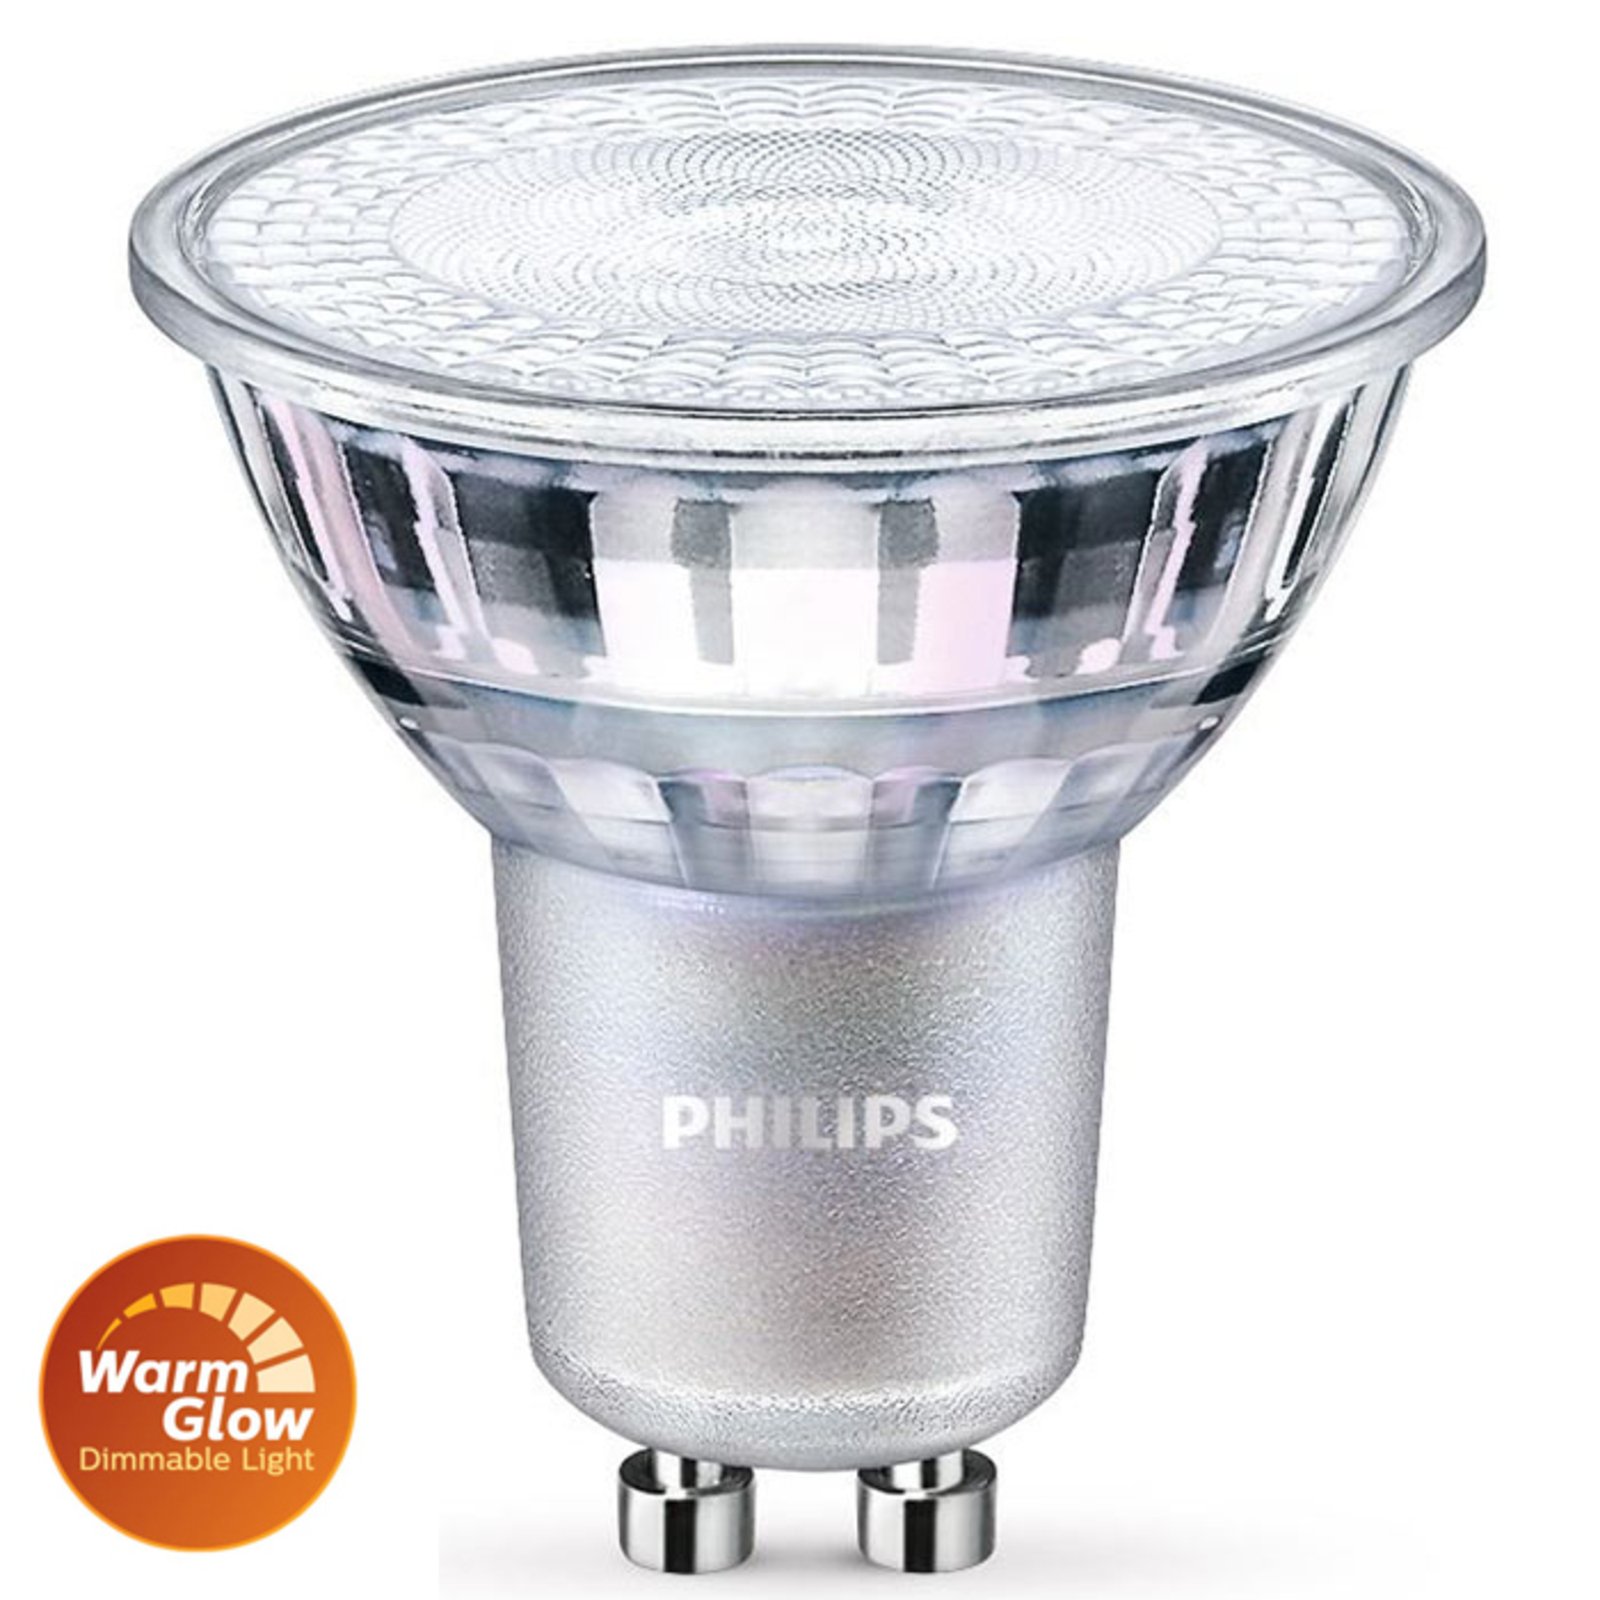 Philips reflectora LED GU10 PAR16 6,2W WarmGlow